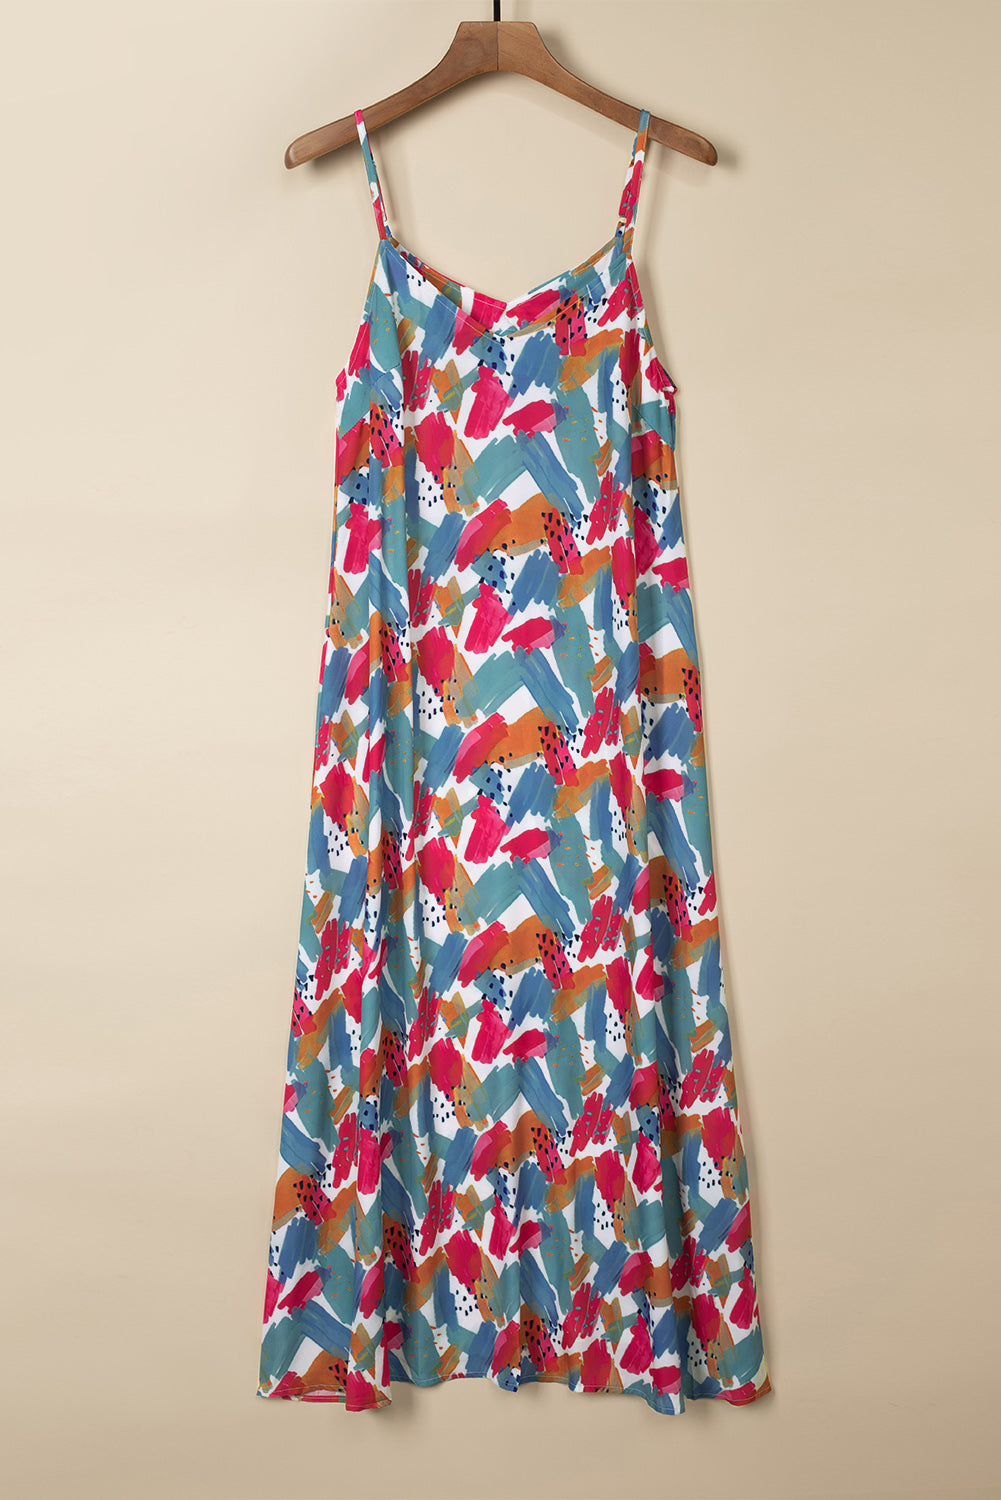 Multicolor Abstract Print Spaghetti Straps Maxi Dress